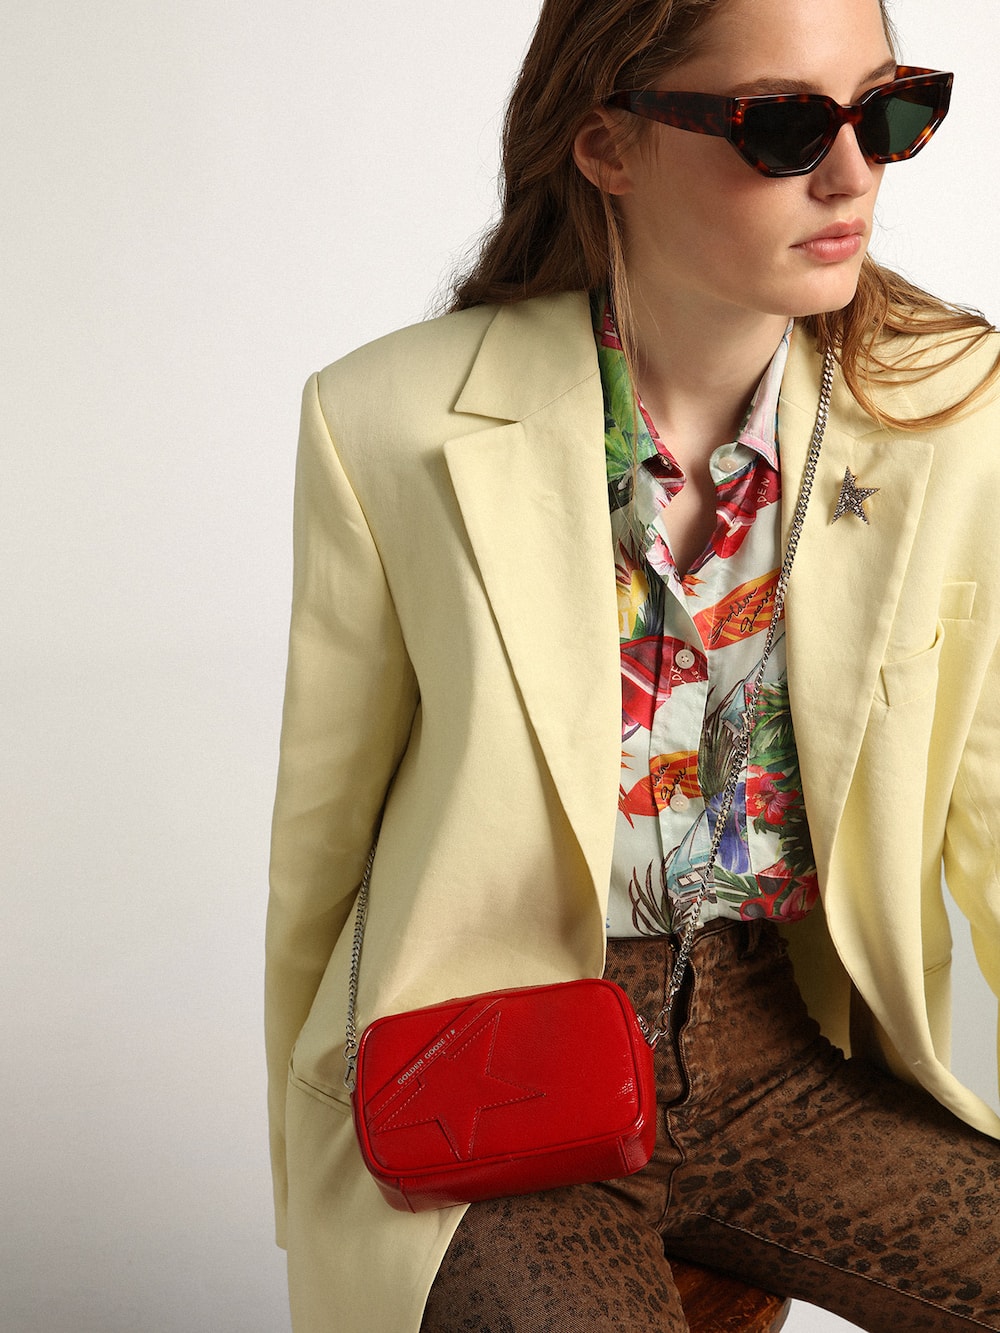 Golden Goose - Mini Star Bag femme en cuir verni rouge avec étoile ton sur ton in 